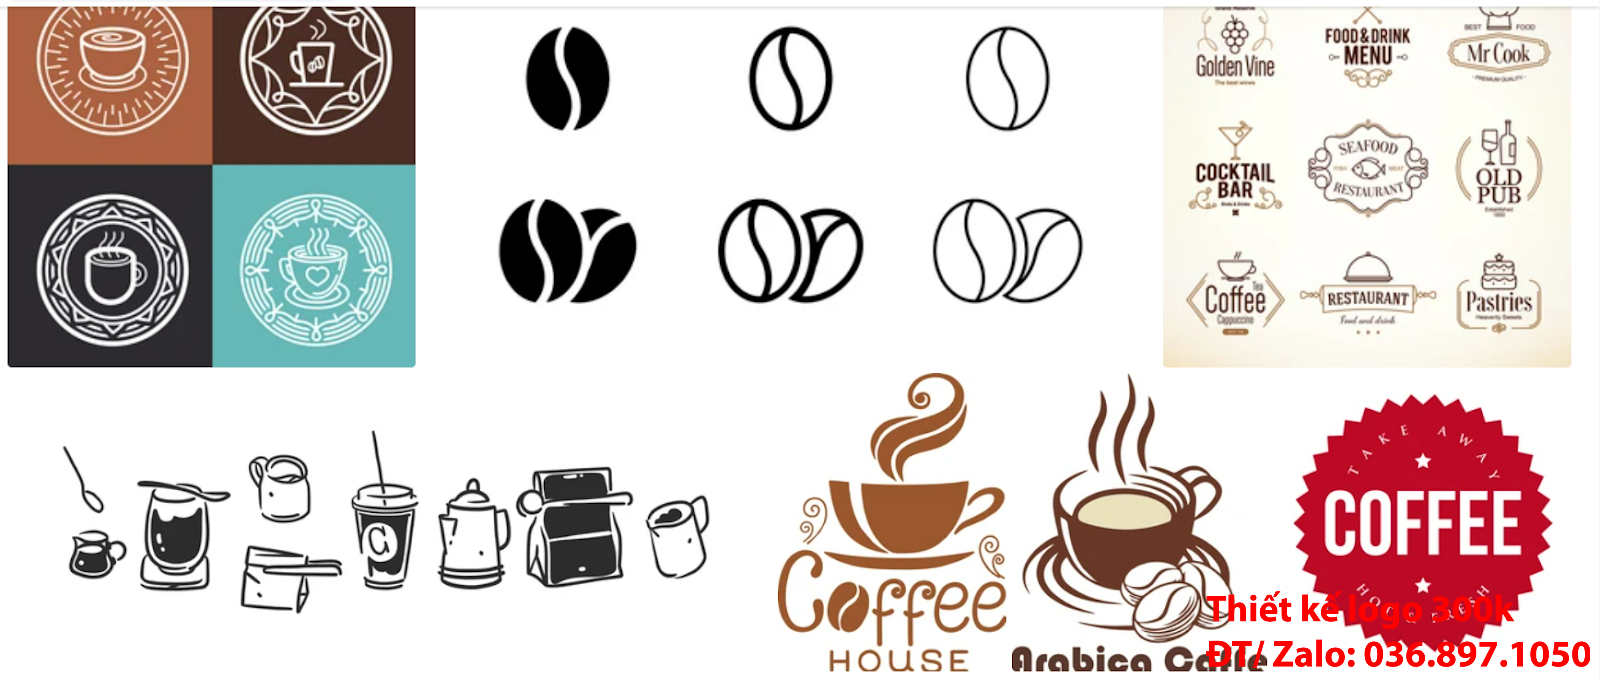 Đơn vị tạo mẫu thiết kế logo cafe coffee đẹp nhất hiện nay đơn giản